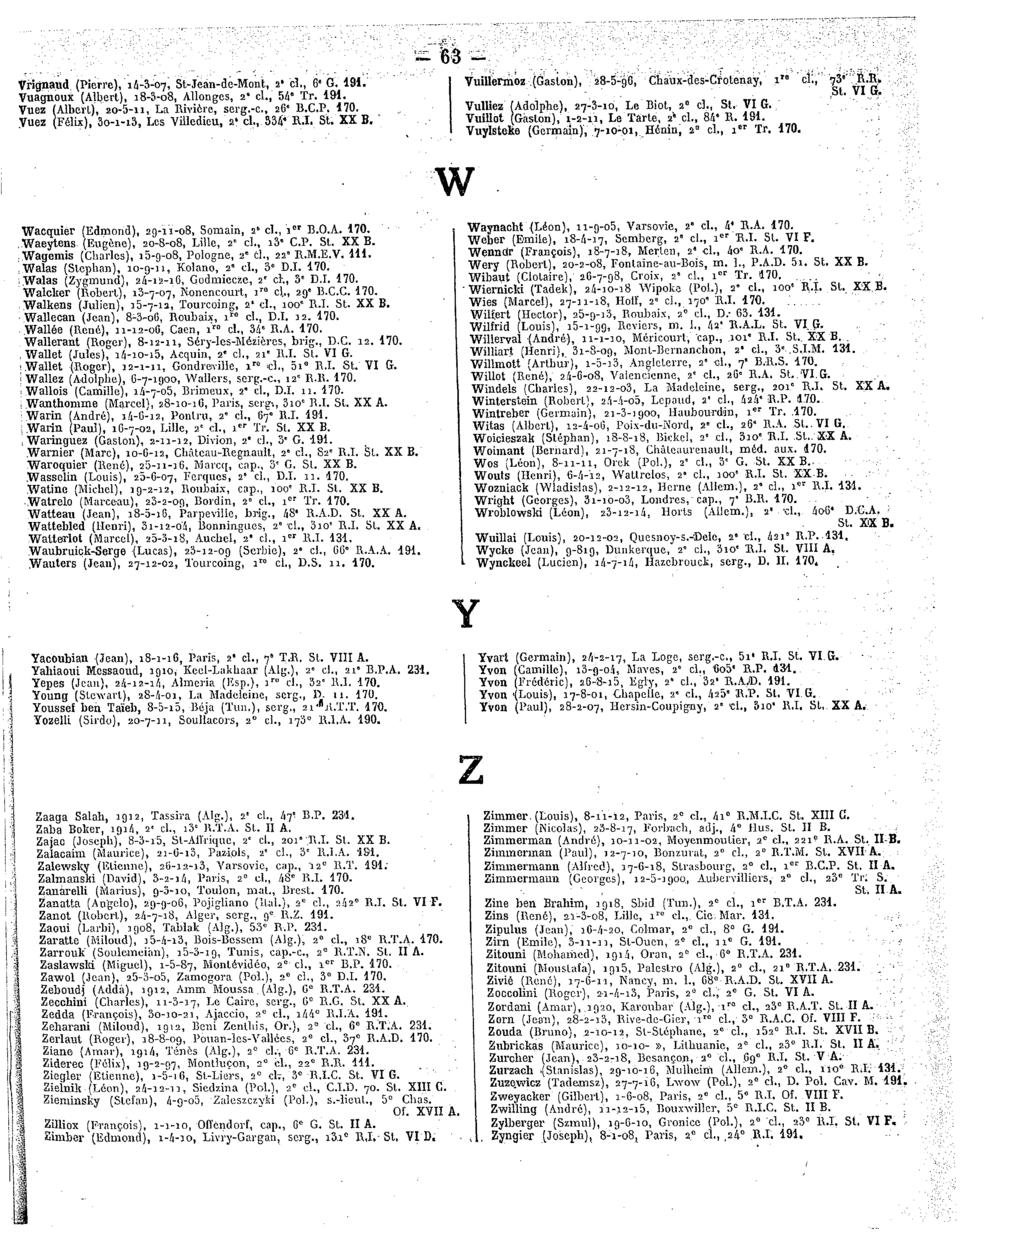 ~B3 ^ Vrignaud (Pierre), 14-3-07, St-Jeân-de-Mont, 2'cl.,6 G. Vuagnoux (Albert), 18-3-08, Allonges, 2*cl.,54"Tr. Vuez(Alberl), 20-5-11, LaRivière, serg.-c,26 B.C.P..Vuez(Félix), 3o-i-i3,LesVilledieu, 2'cl.